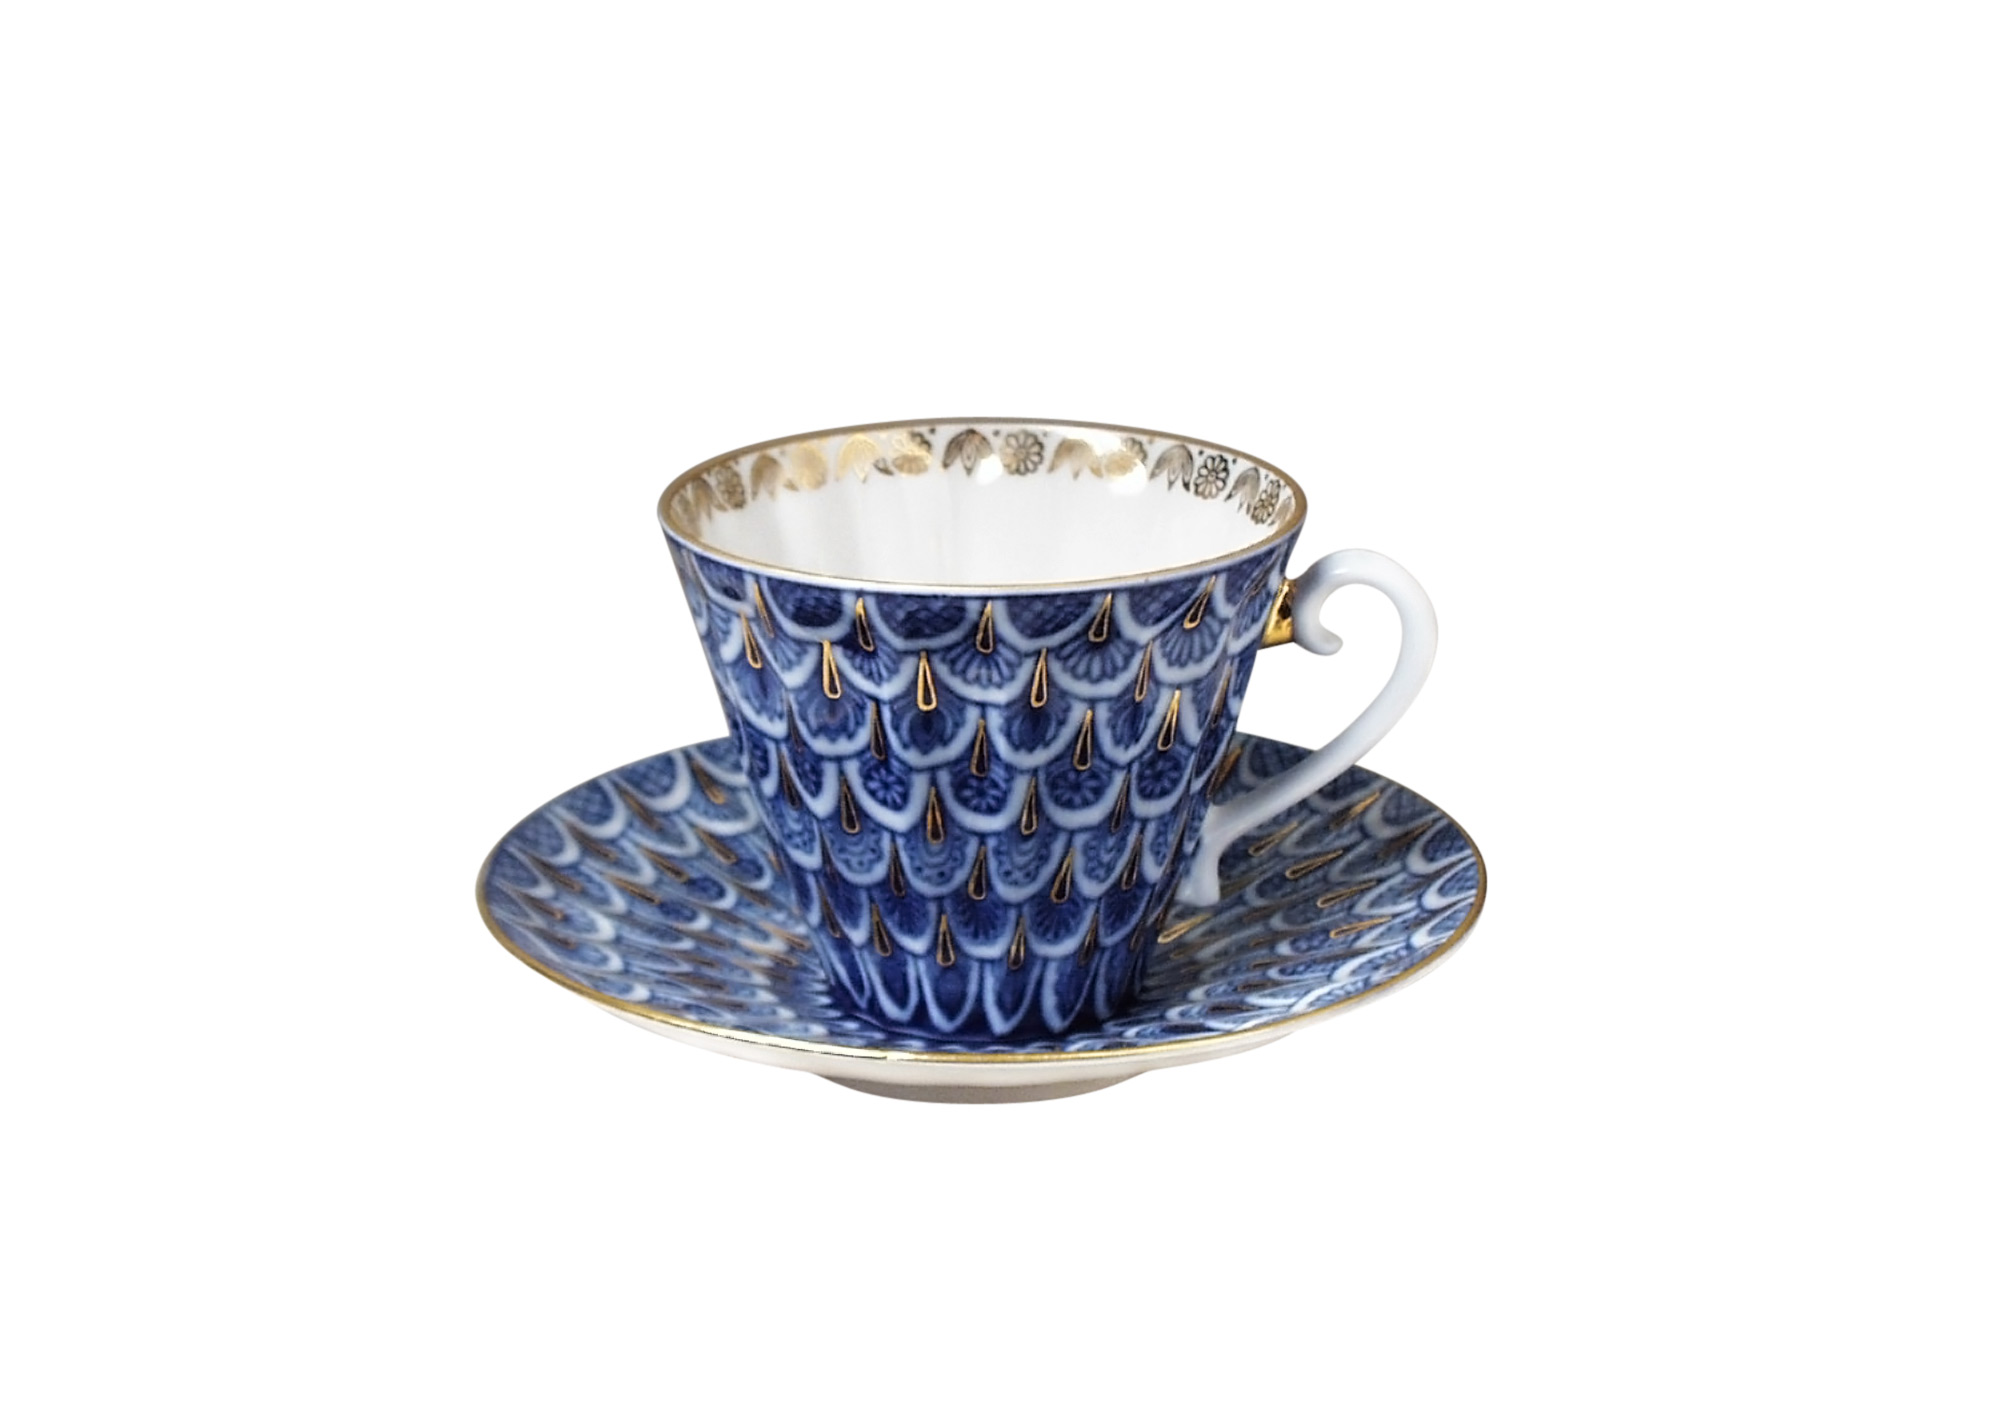 Buy Forget-Me-Not Porcelain Cup & Saucer at GoldenCockerel.com